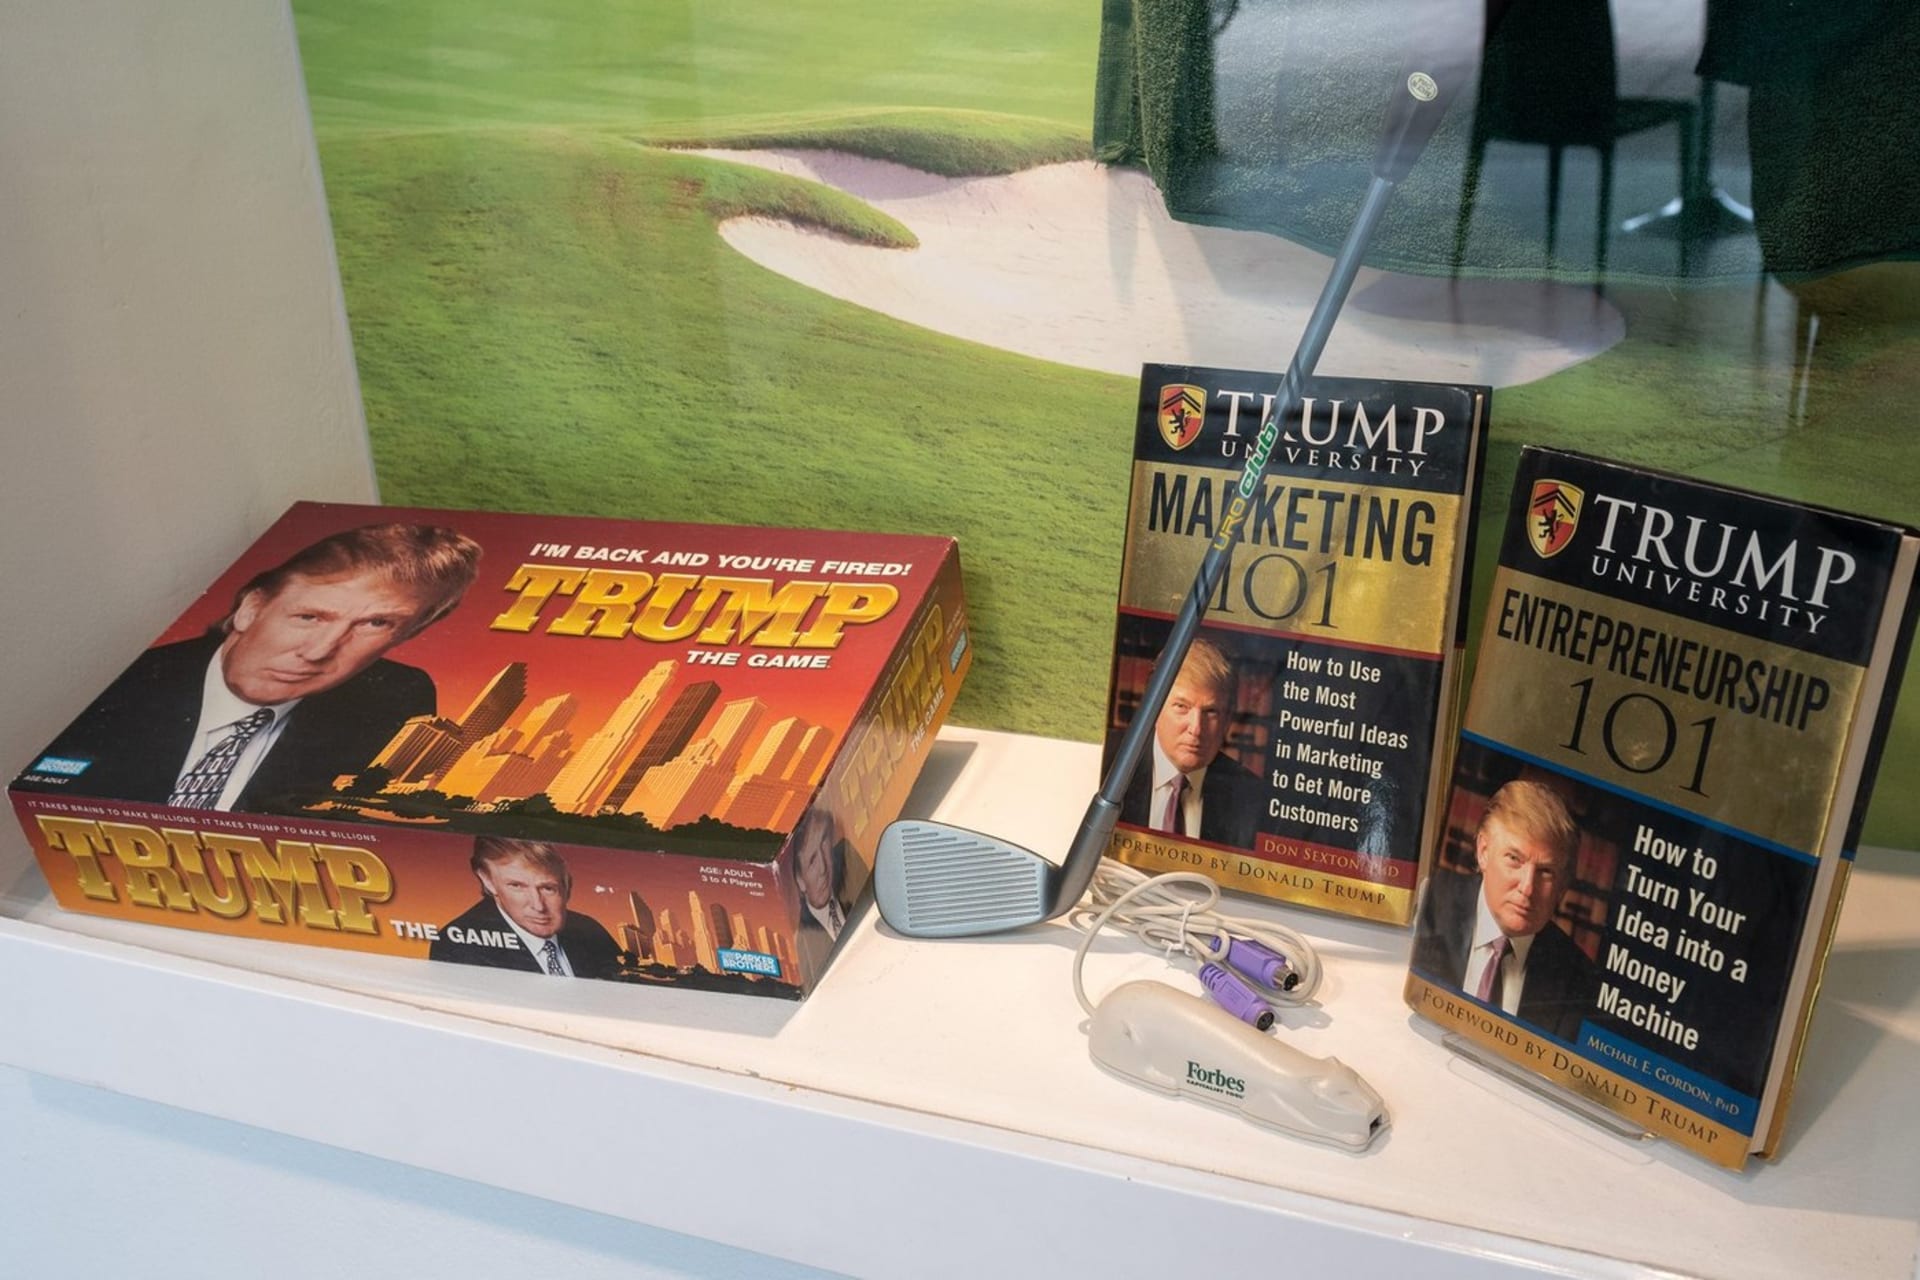 Trumpovy produkty v Muzeu selhání v Kanadě